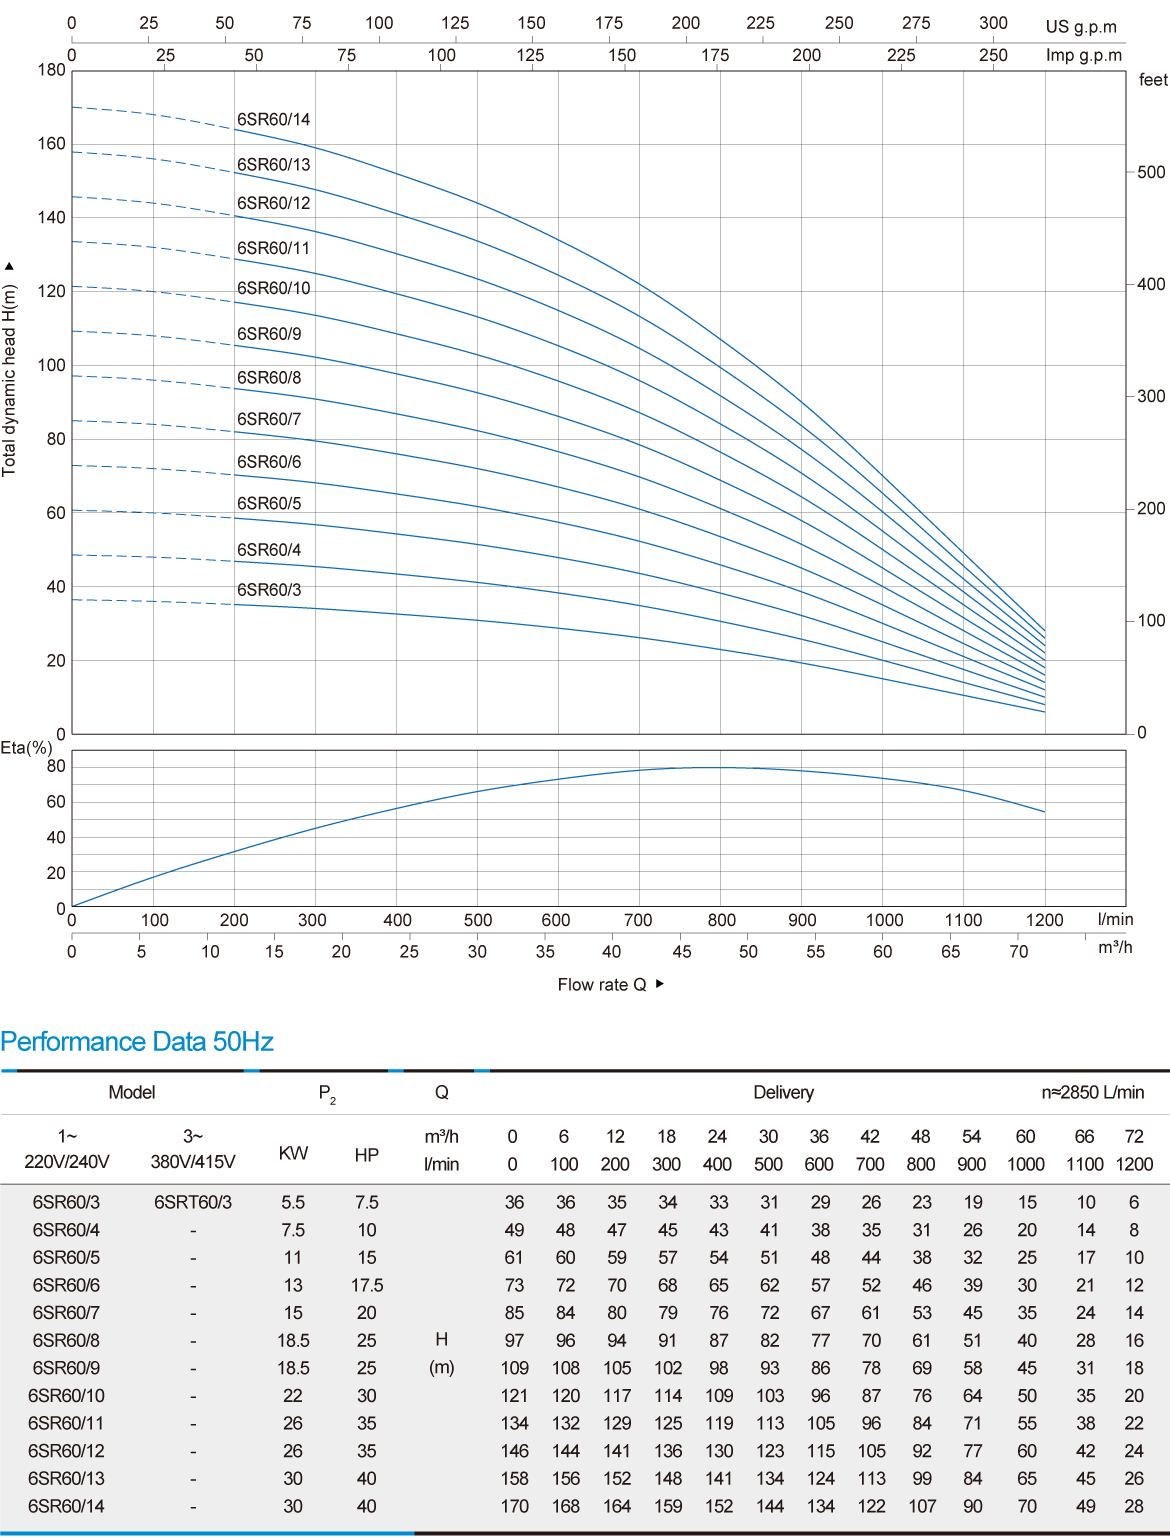 نموداری از میزان عملکرد یک پمپ شناور 6SR60